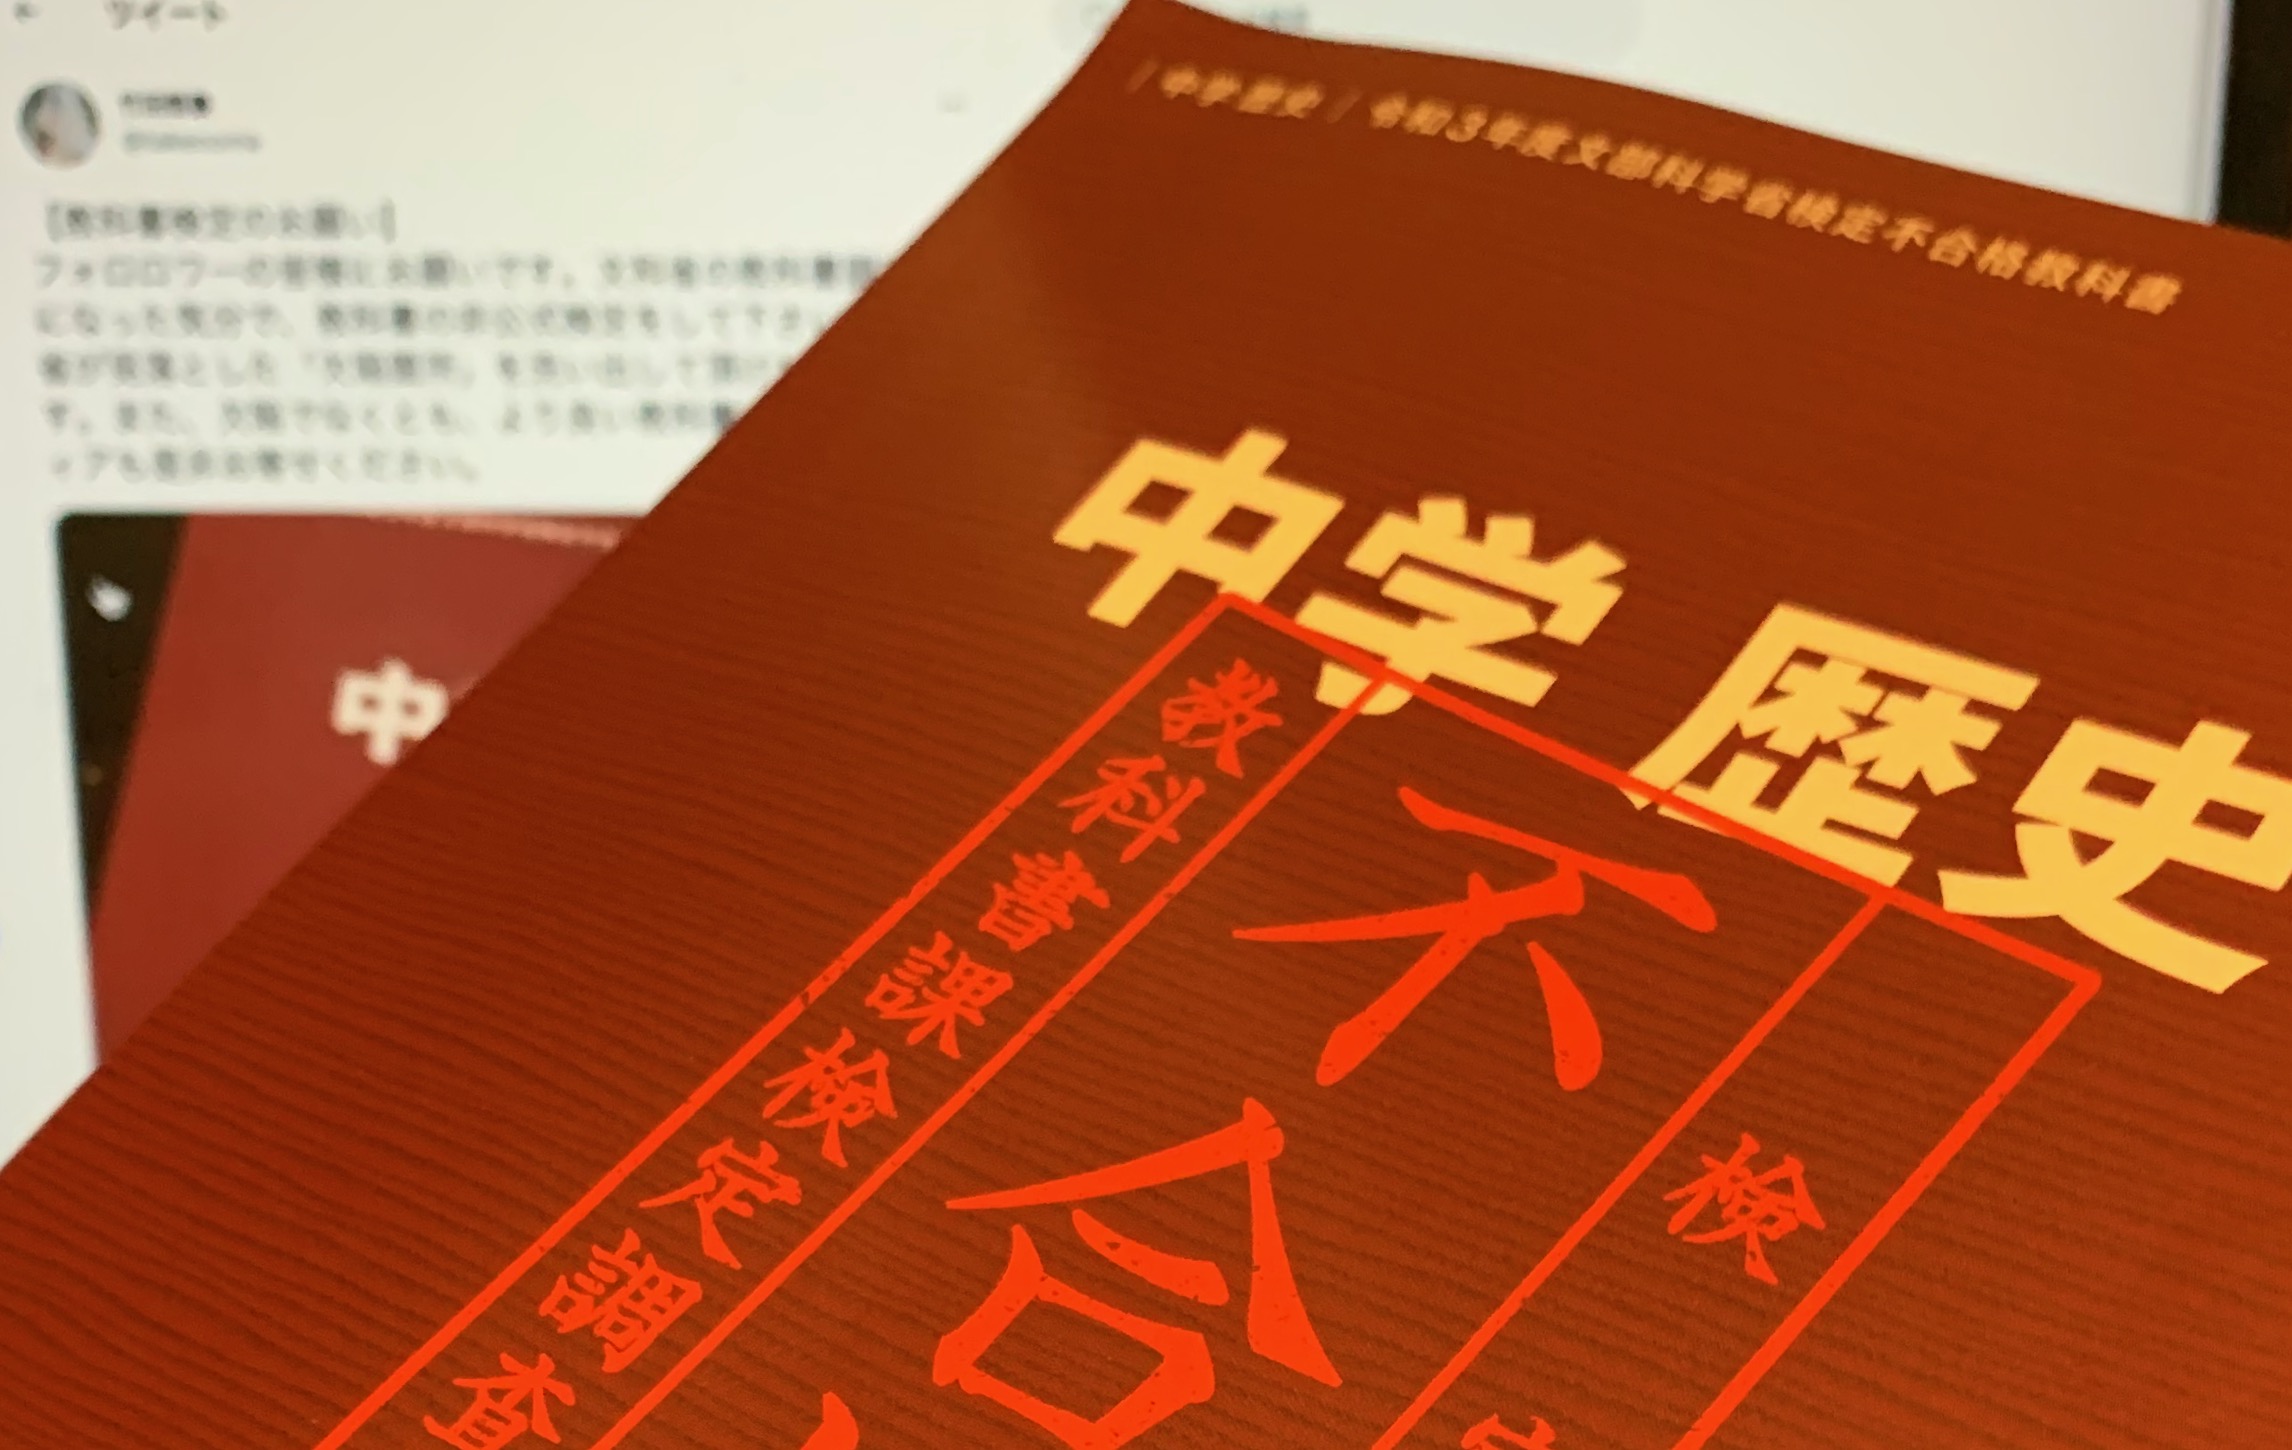 竹田恒泰さんが思いを込めた日本人のための教科書：『国史教科書』（中学 歴史 令和3年度文部科学省検定不合格教科書 ）中間記 |  MeWiseMagic.net